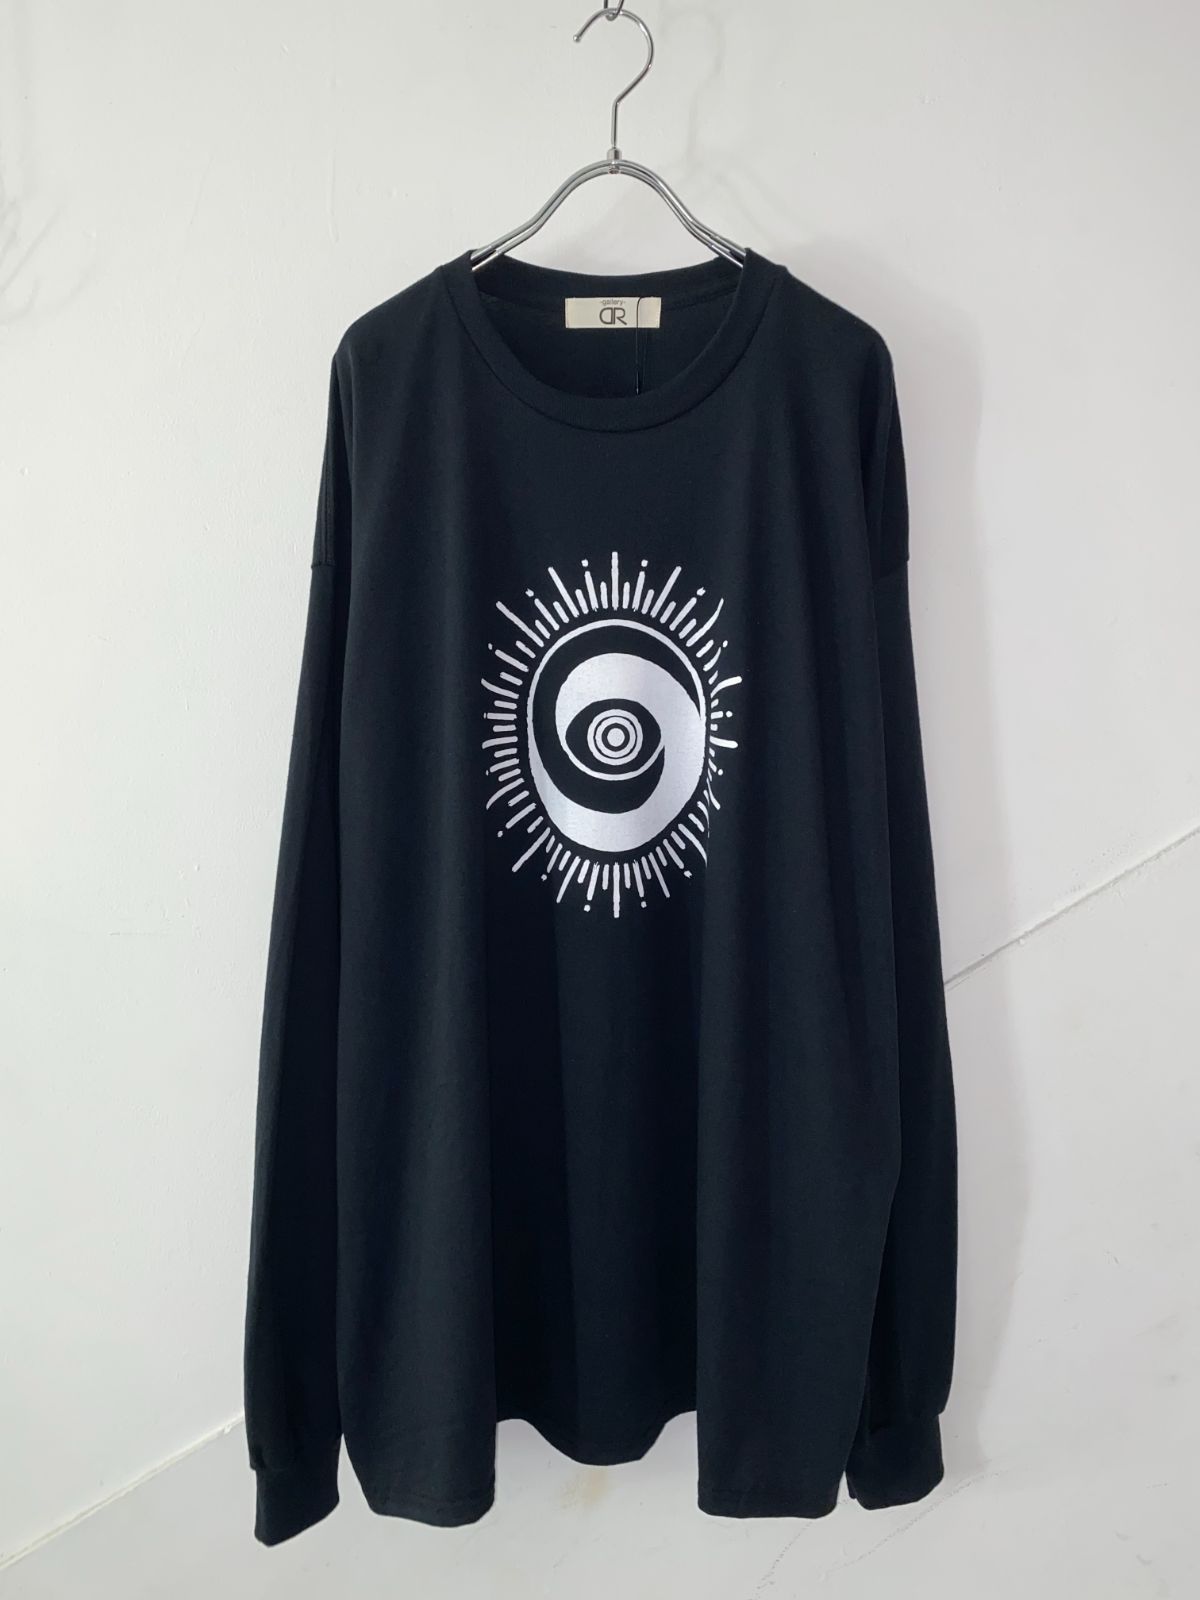 DR/BIGロングスリーブTシャツ#03 [BLACK]/虚空坊主 - メルカリ